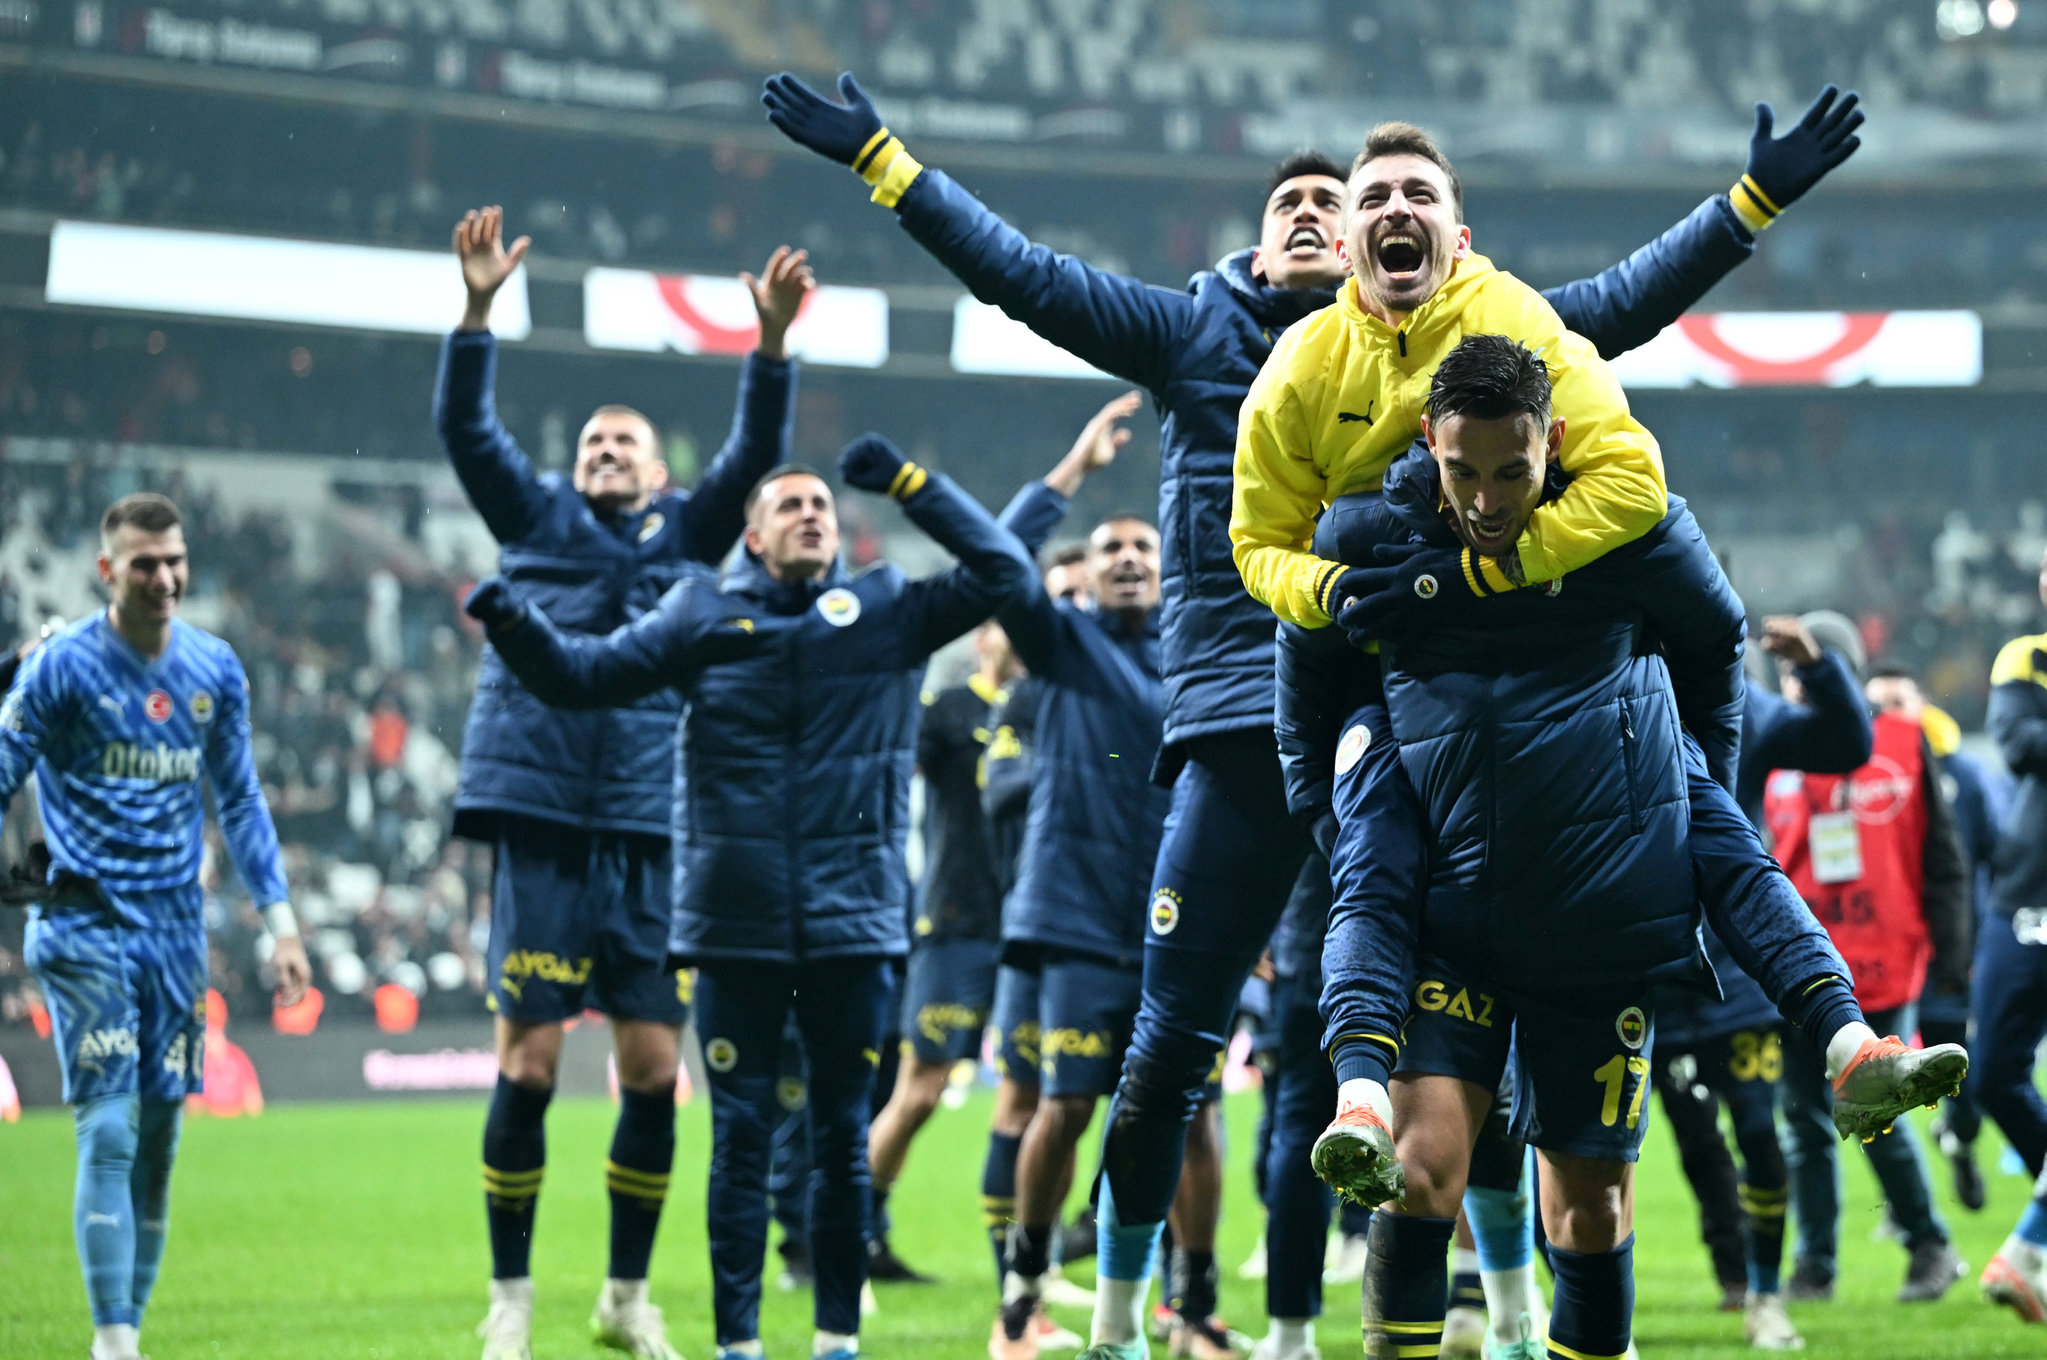 Diego Rossi kupayı kazandı Fenerbahçe’nin kasası doldu! İşte o rakam